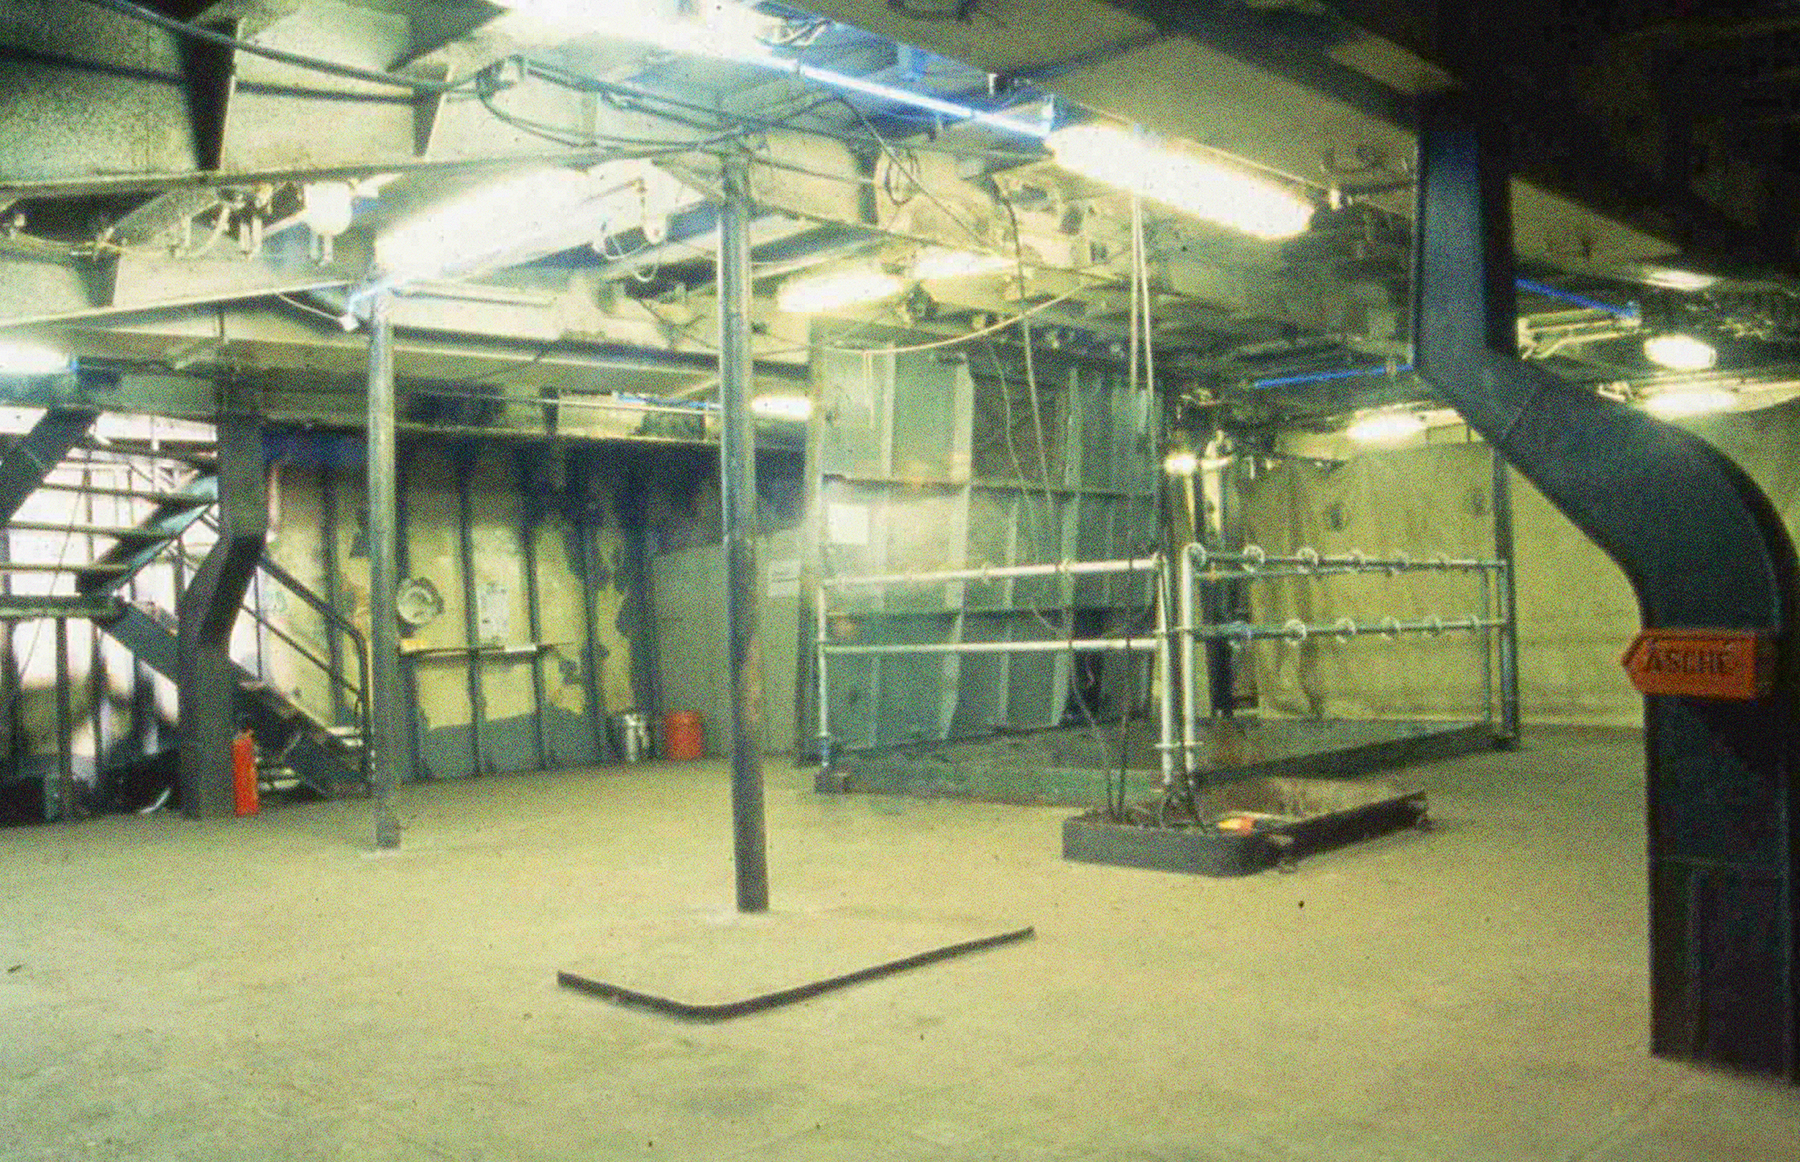 Ein Innenraum der Stubnitz (die Vearbeitung). Neonröhren an der Decke und Metall-Säulen im Raum.